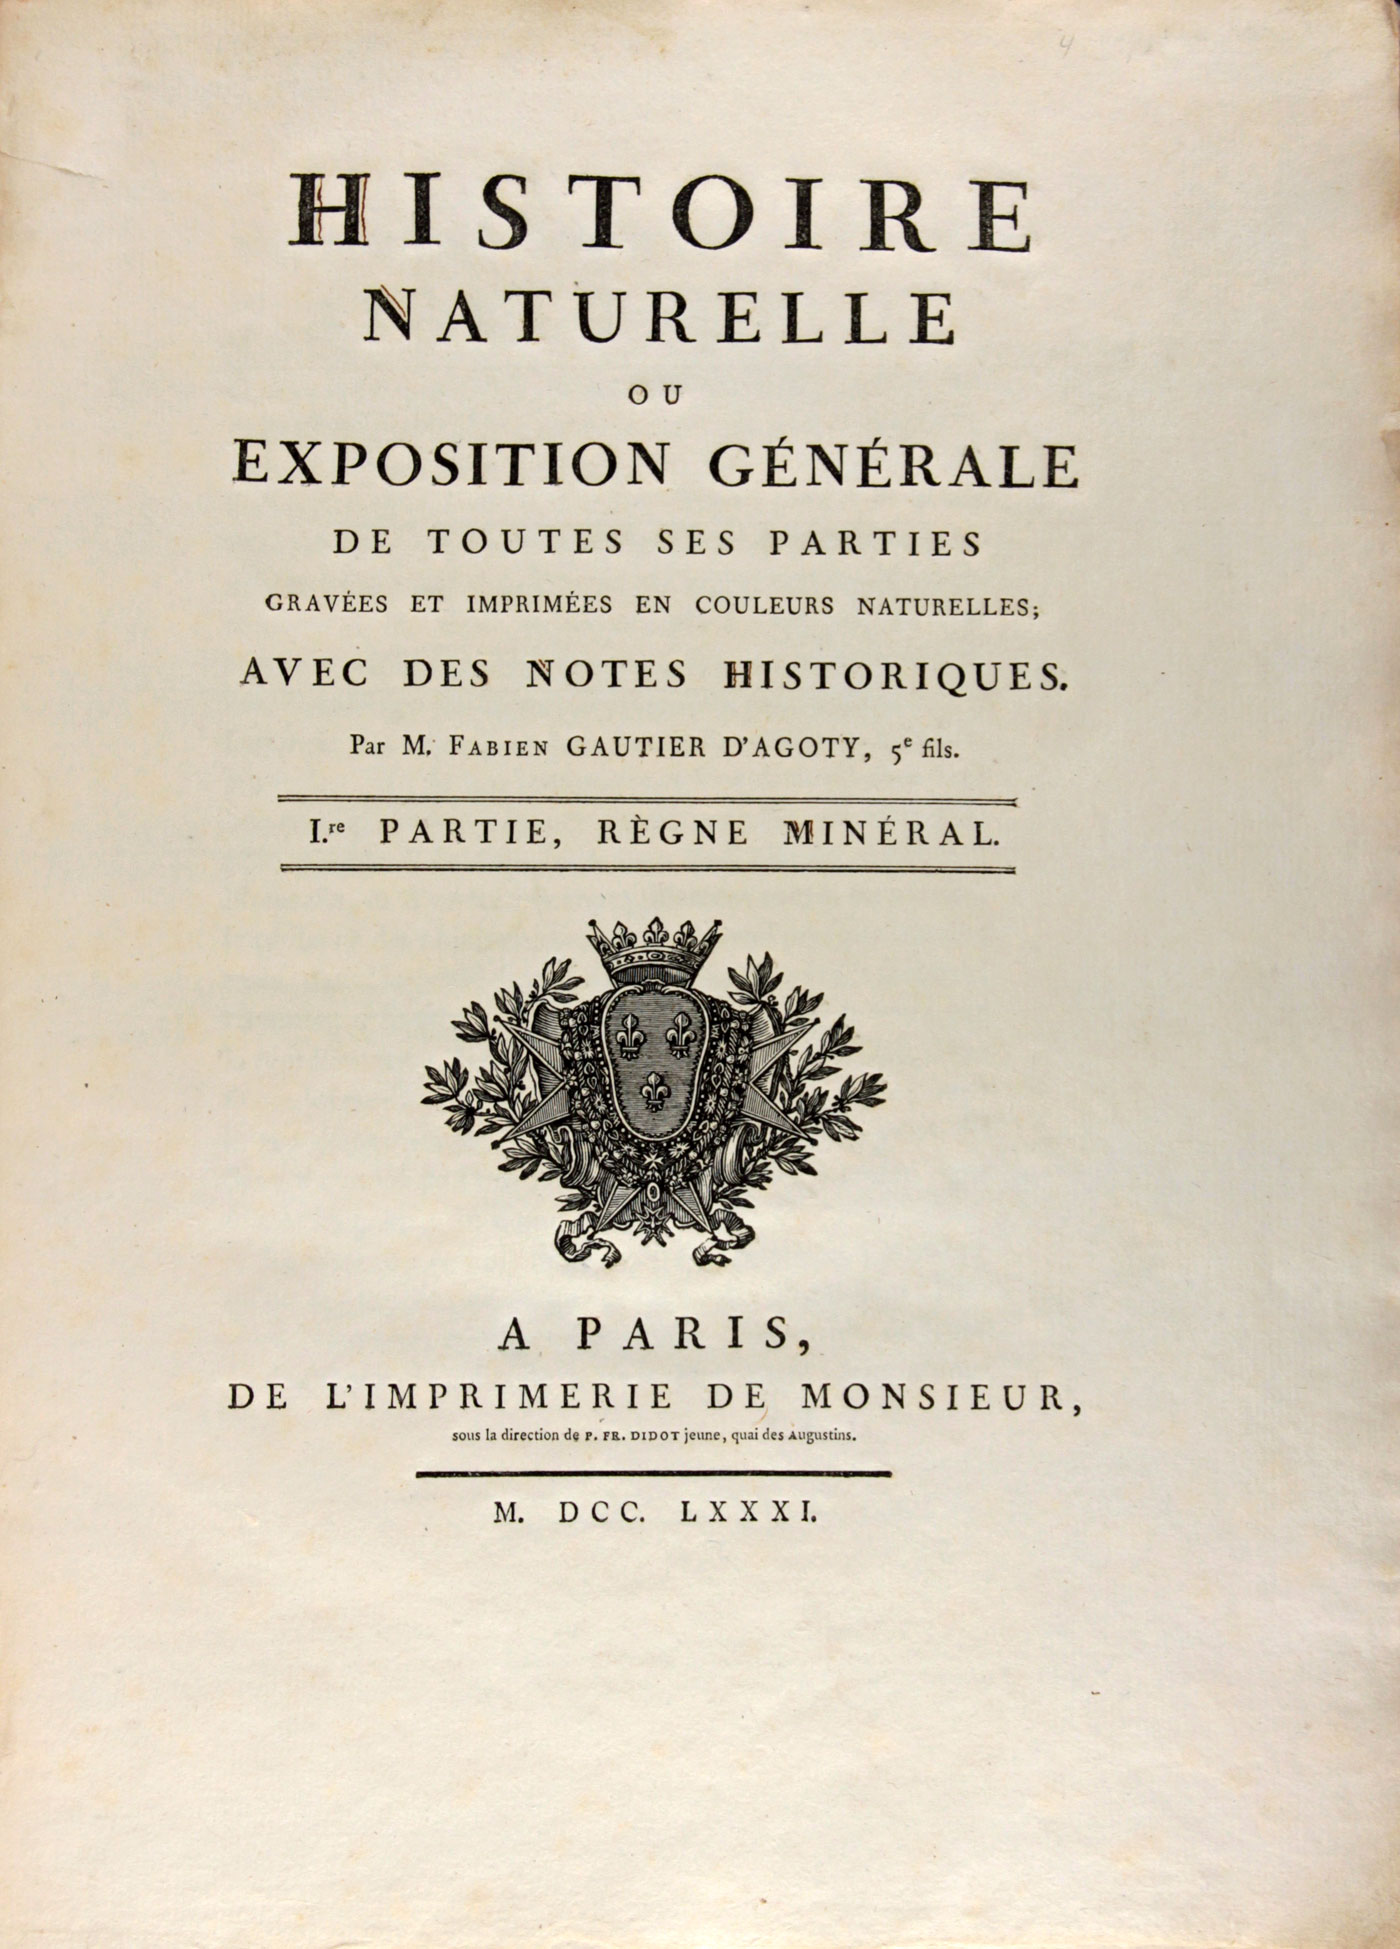 Histoire Naturelle (1781), title page